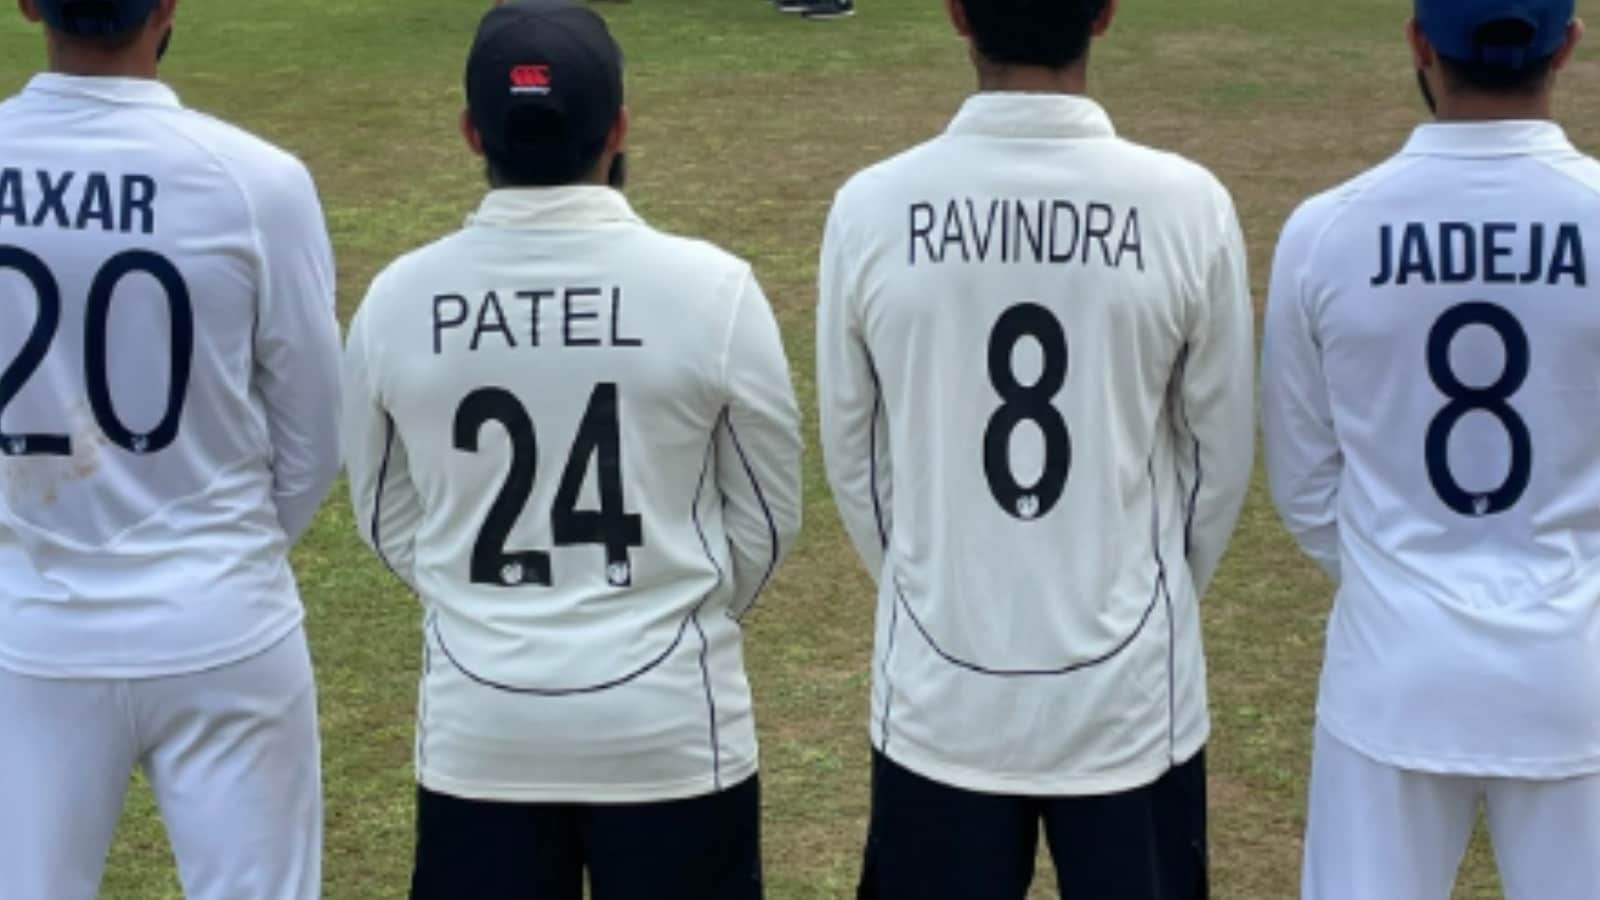 Axar, Patel, Ravindra, Jadeja: Ashwin's Pic After Test Win Shows How Cricket Unites Us